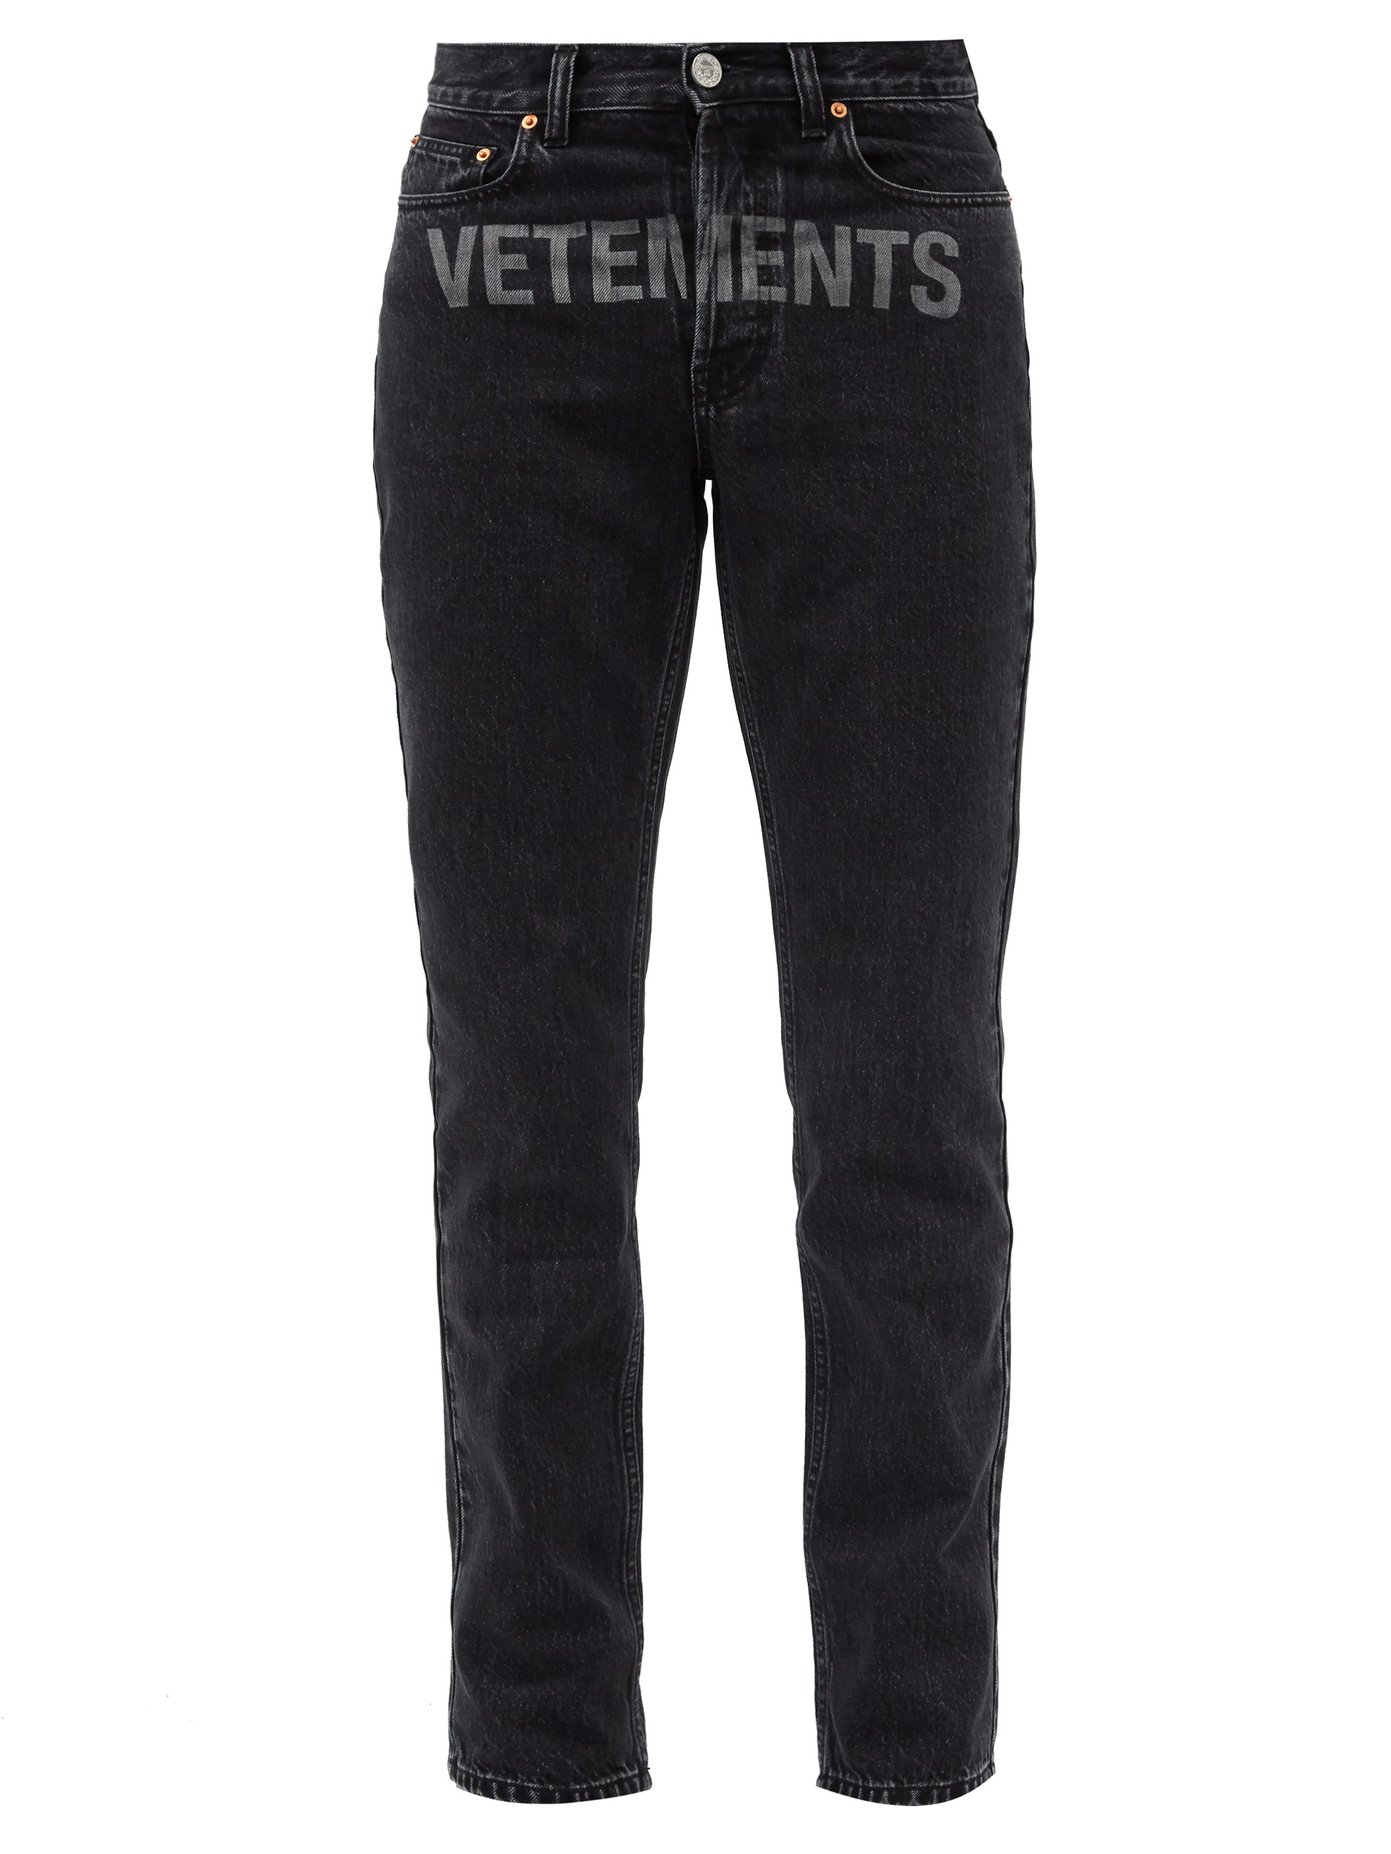 vetements black jeans